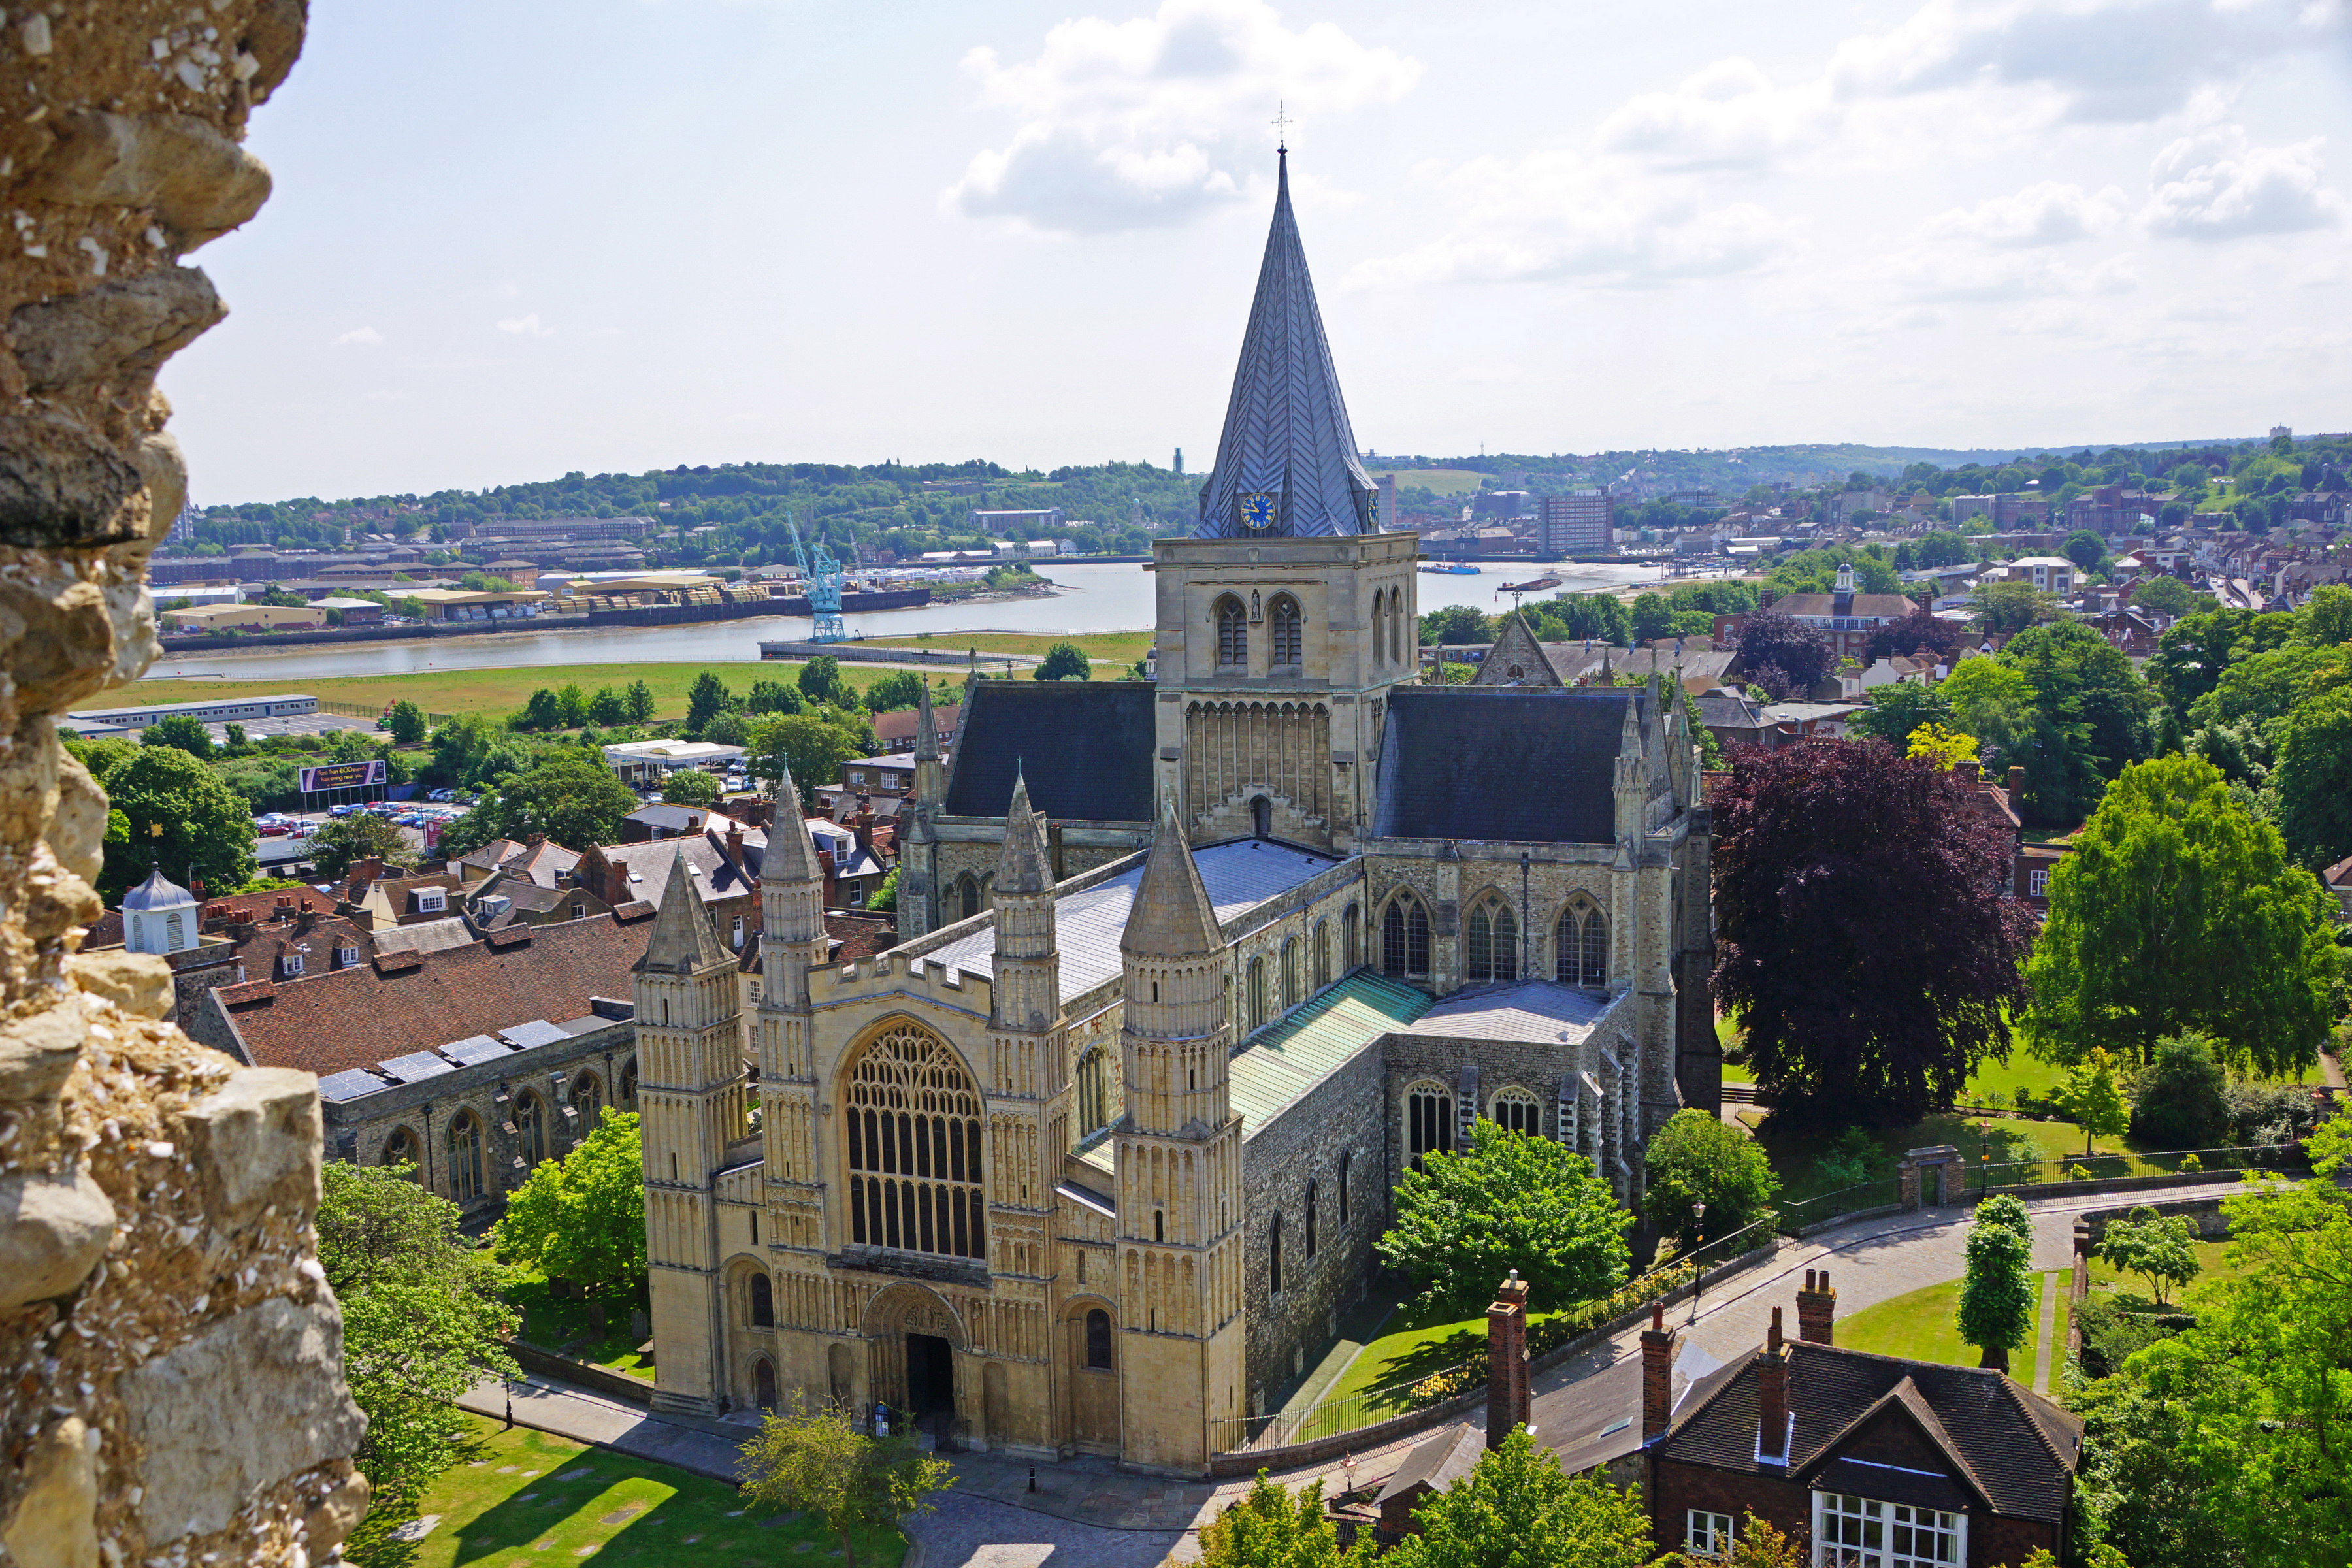 Кафедральный собор в люксембурге фото